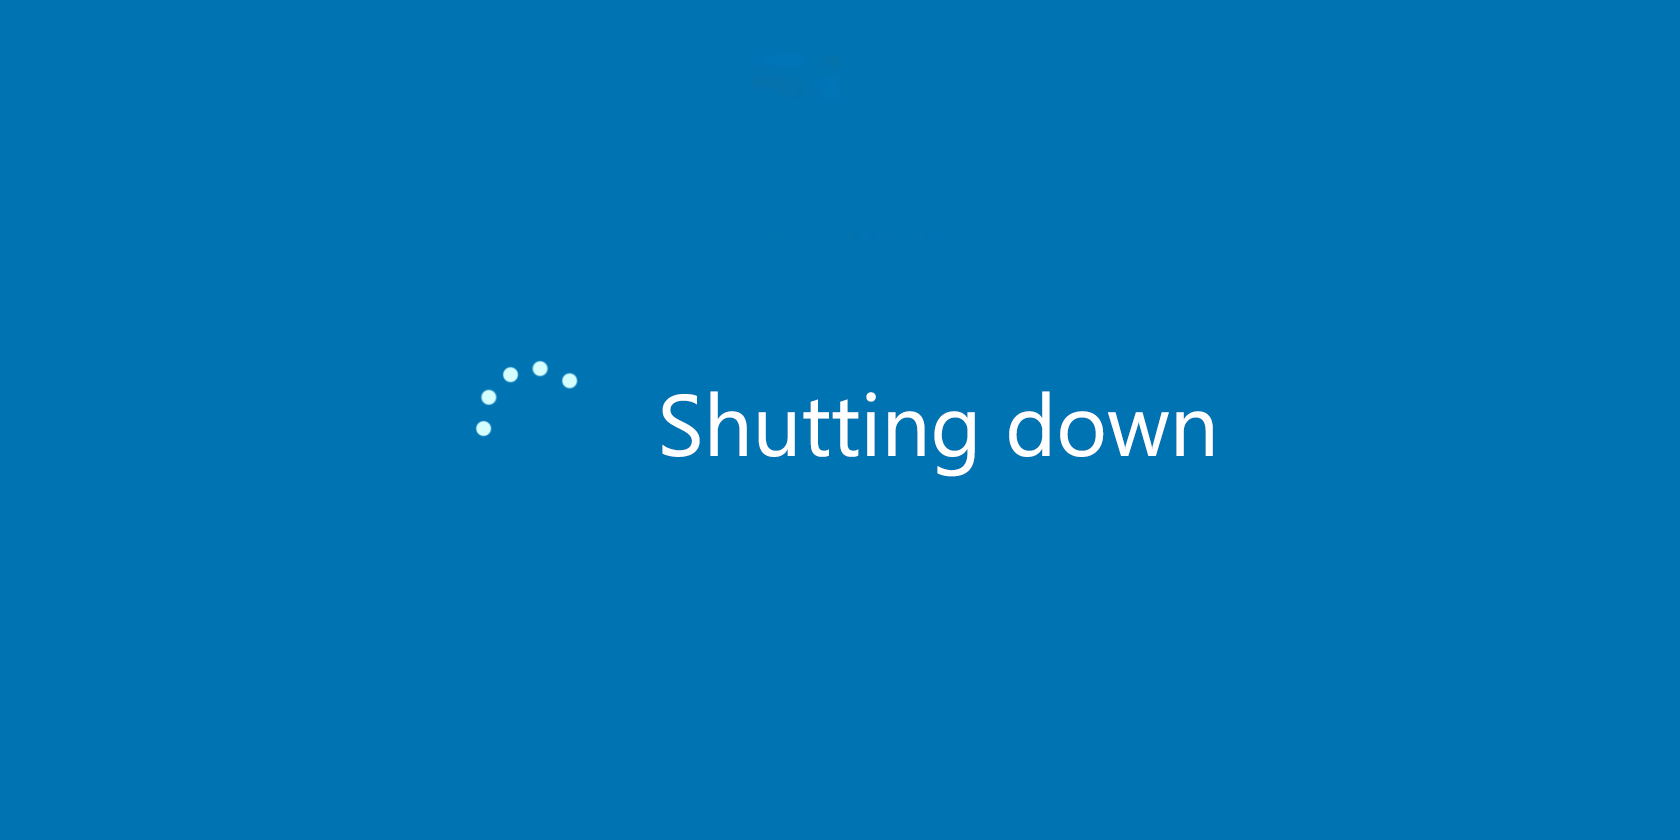 [B! windows] How to Shutdown or Sleep Windows 10 With a